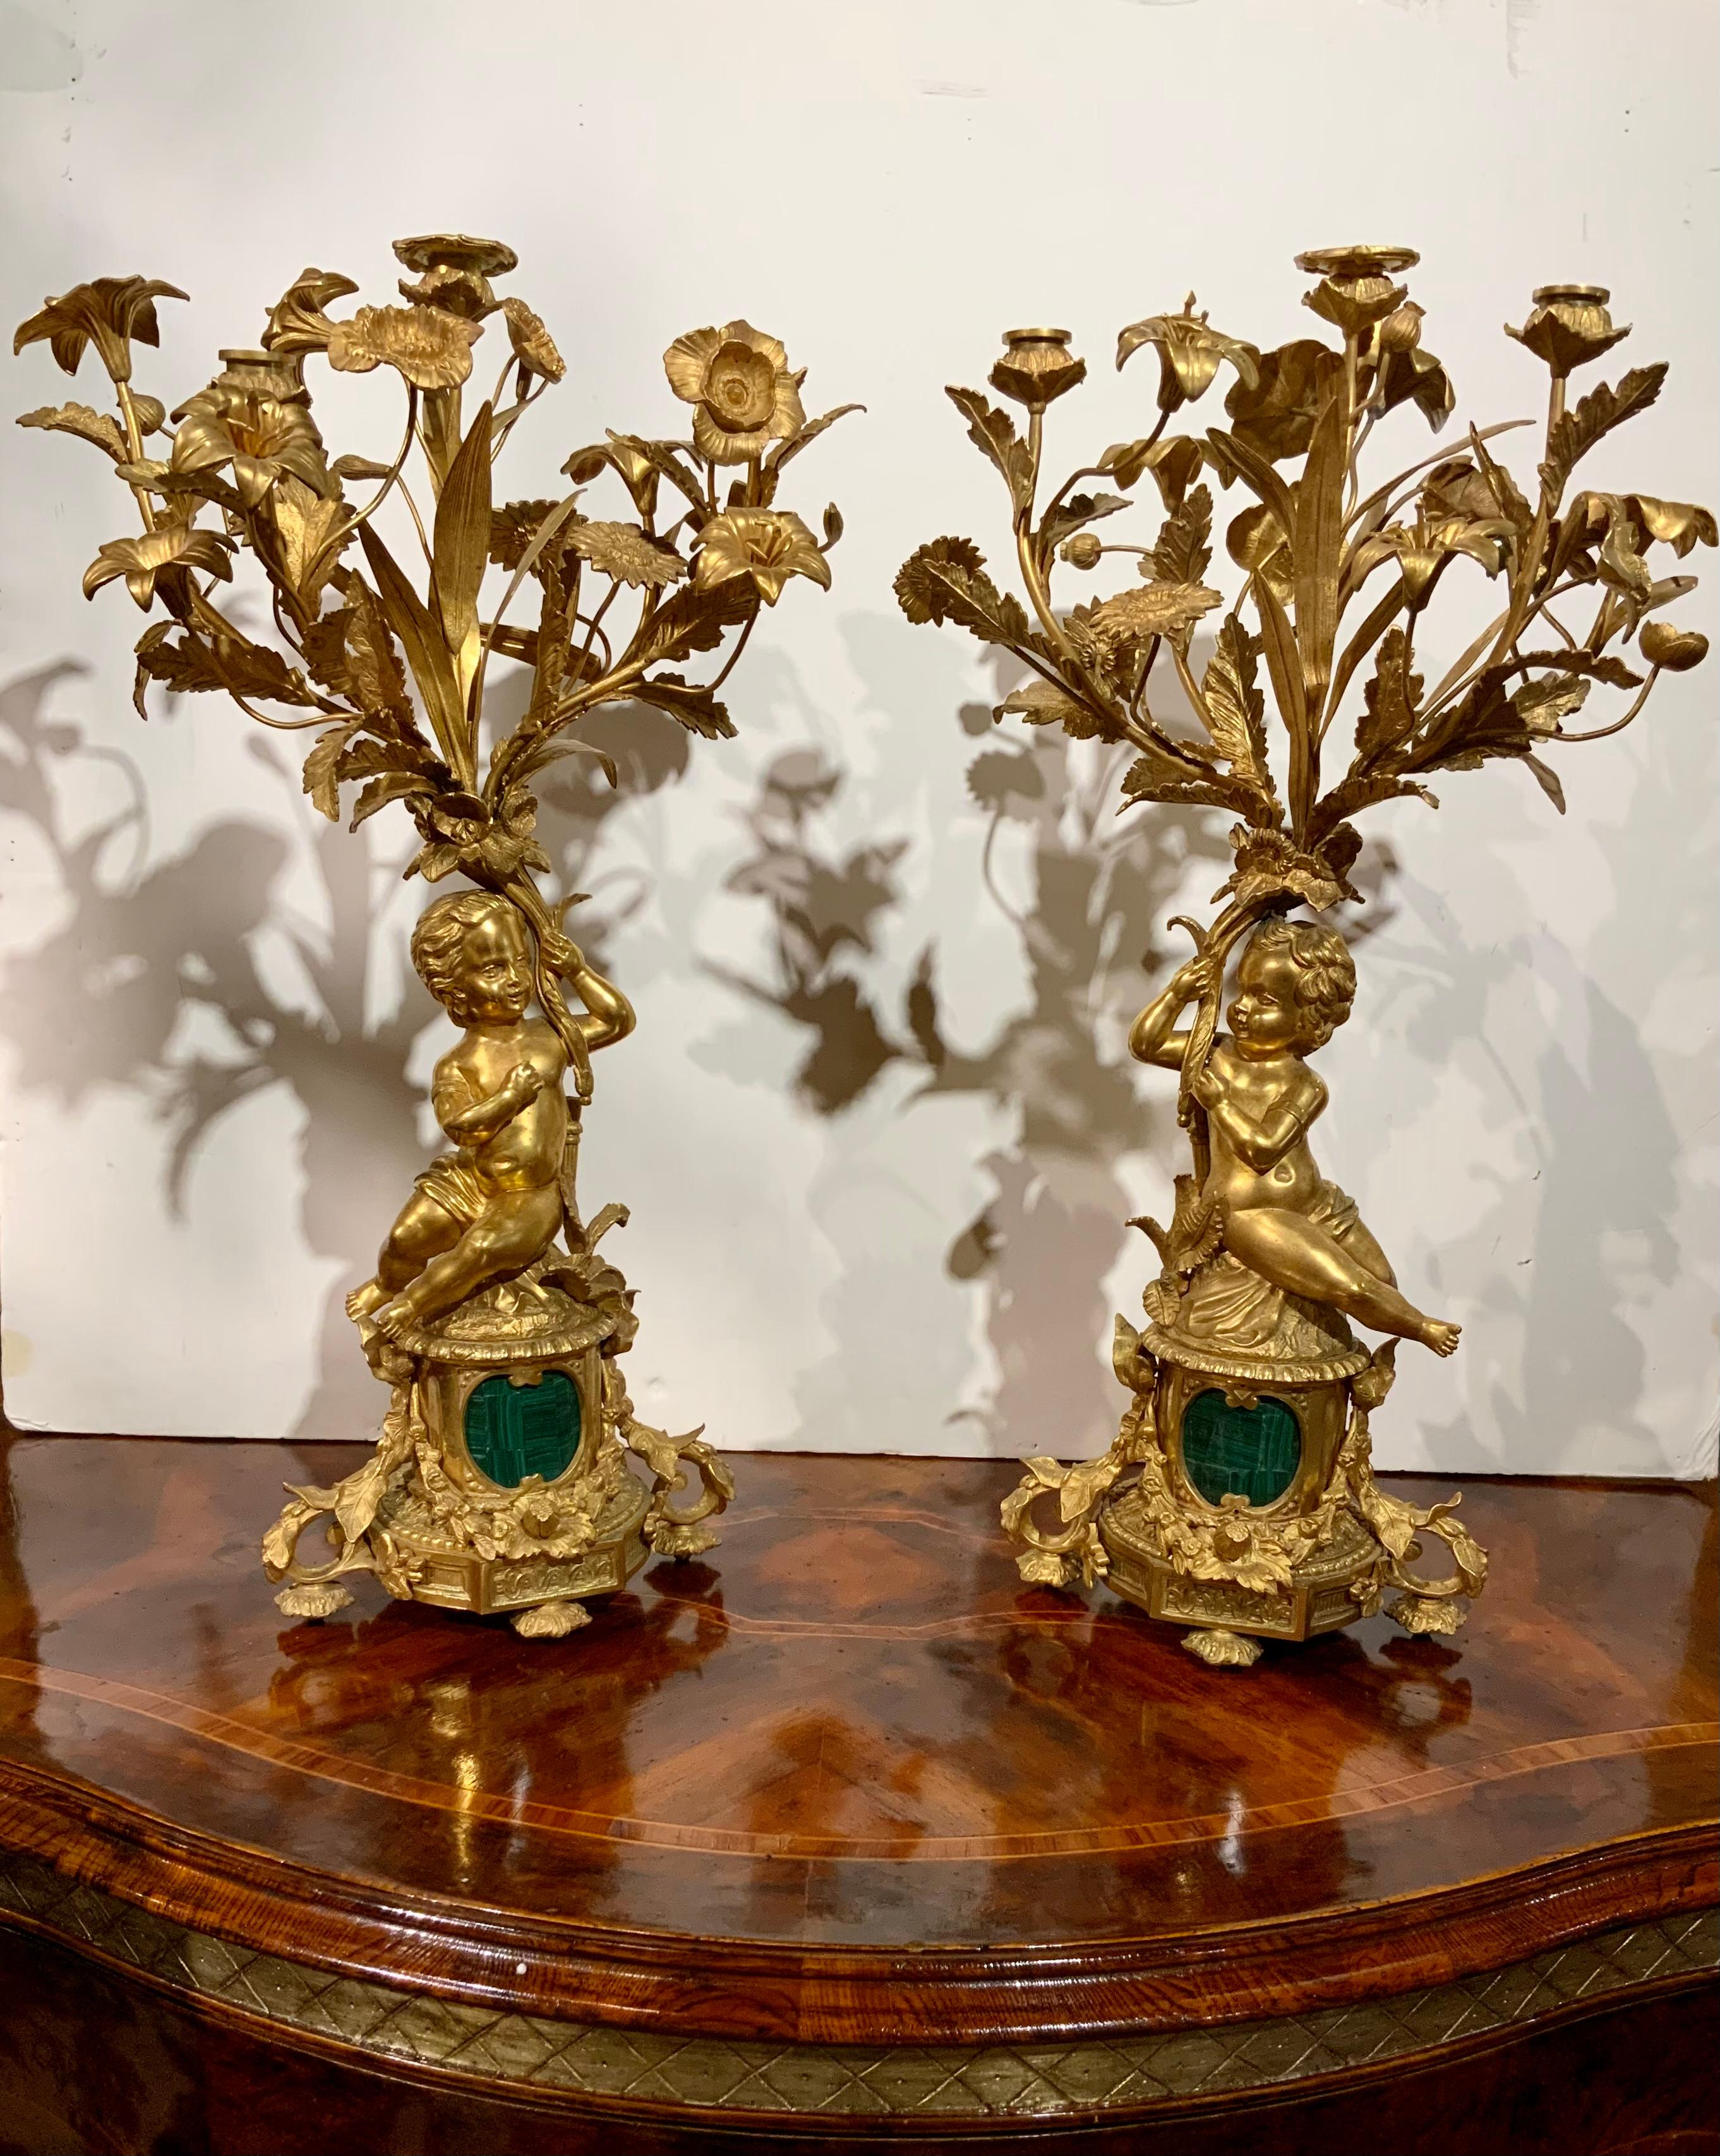 Dieses Paar vergoldete Bronze Candleabrum sind in gutem Zustand mit
Die ursprüngliche glänzende Goldpatina. Jedes Candleabrum hat eine vergoldete
Putti mit drei Zweigen, die drei Kerzenhalter halten.
Jedes Candleabrum hat eine Vielzahl von